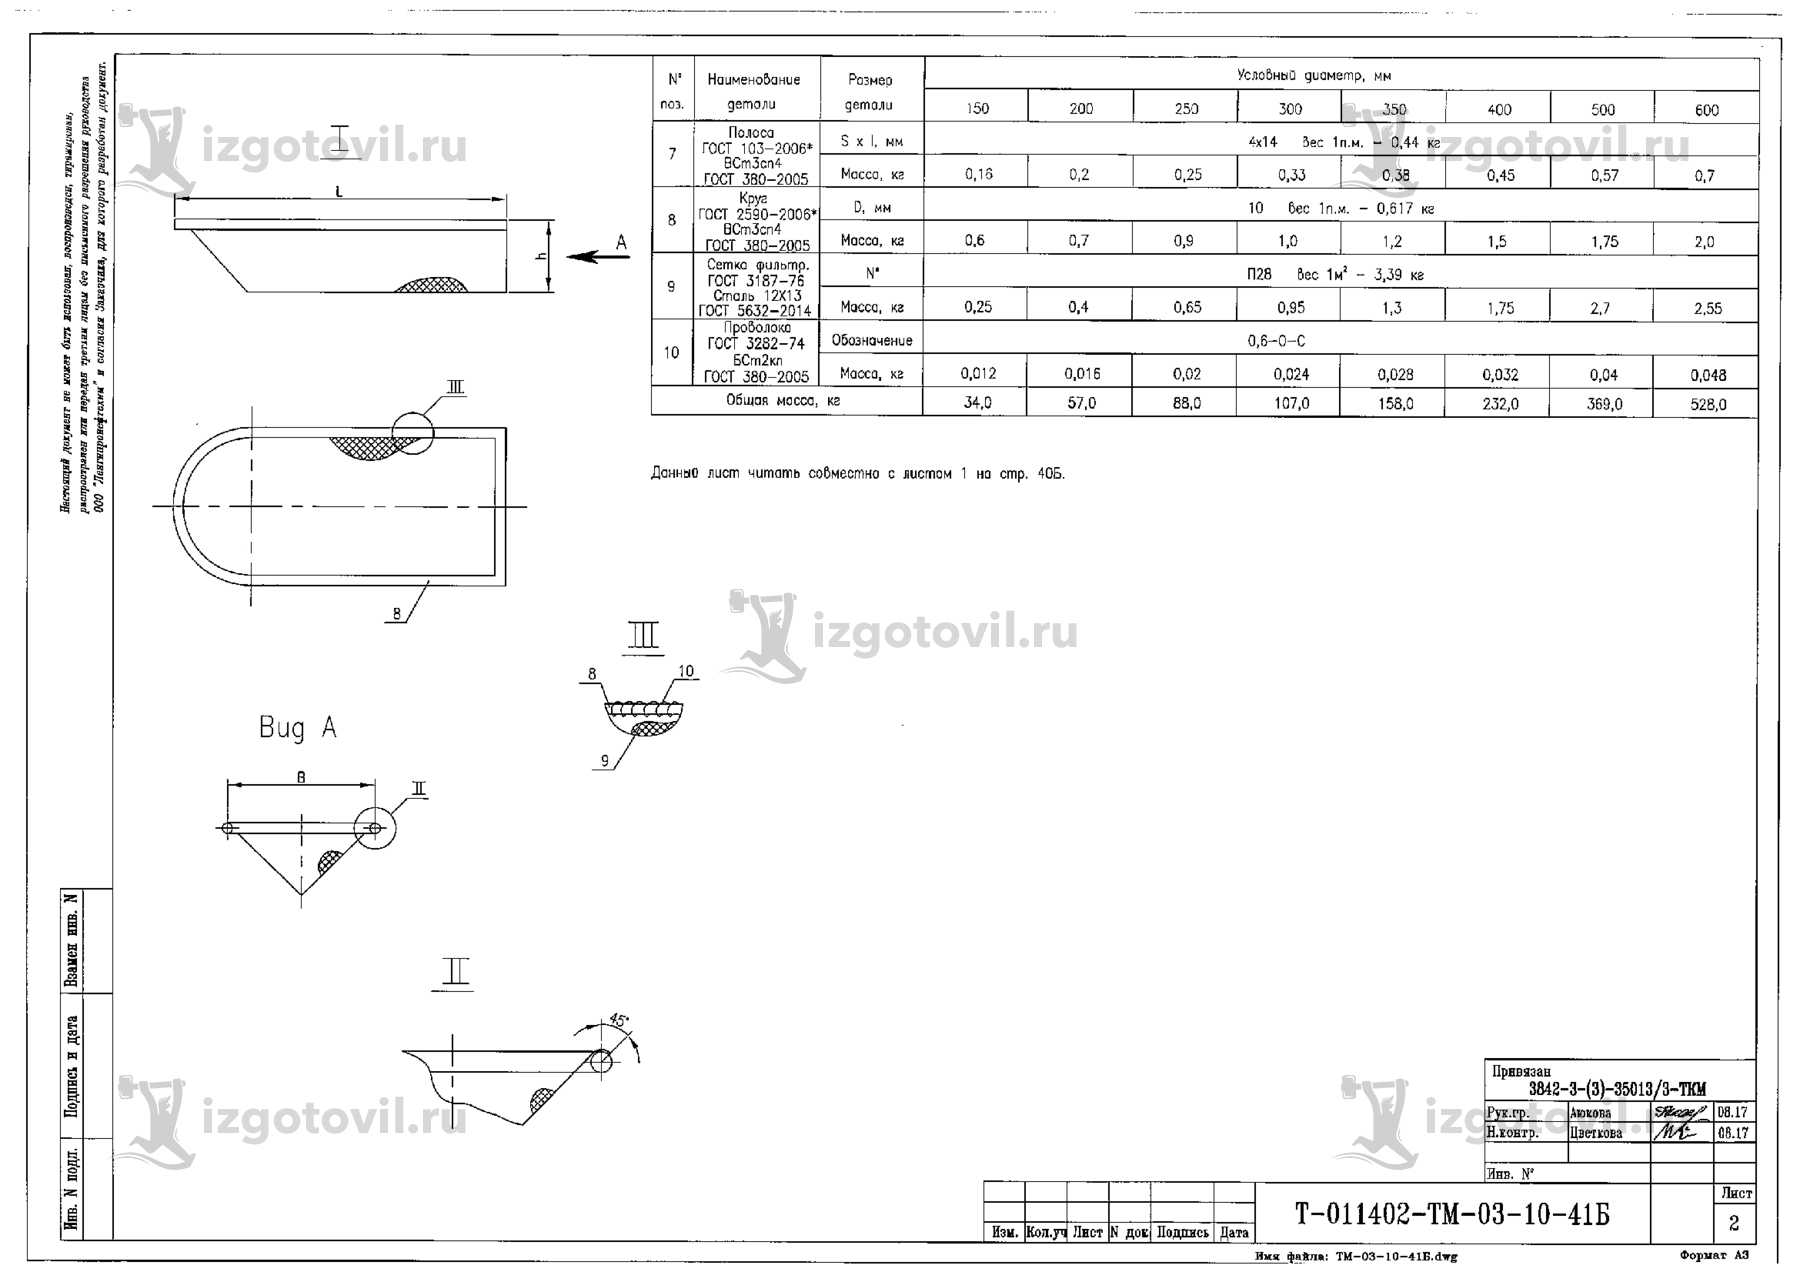 Изготовление деталей узлов (комплекс комбинированной установки по переработке прямогонных бензиновых фракций УК-1).